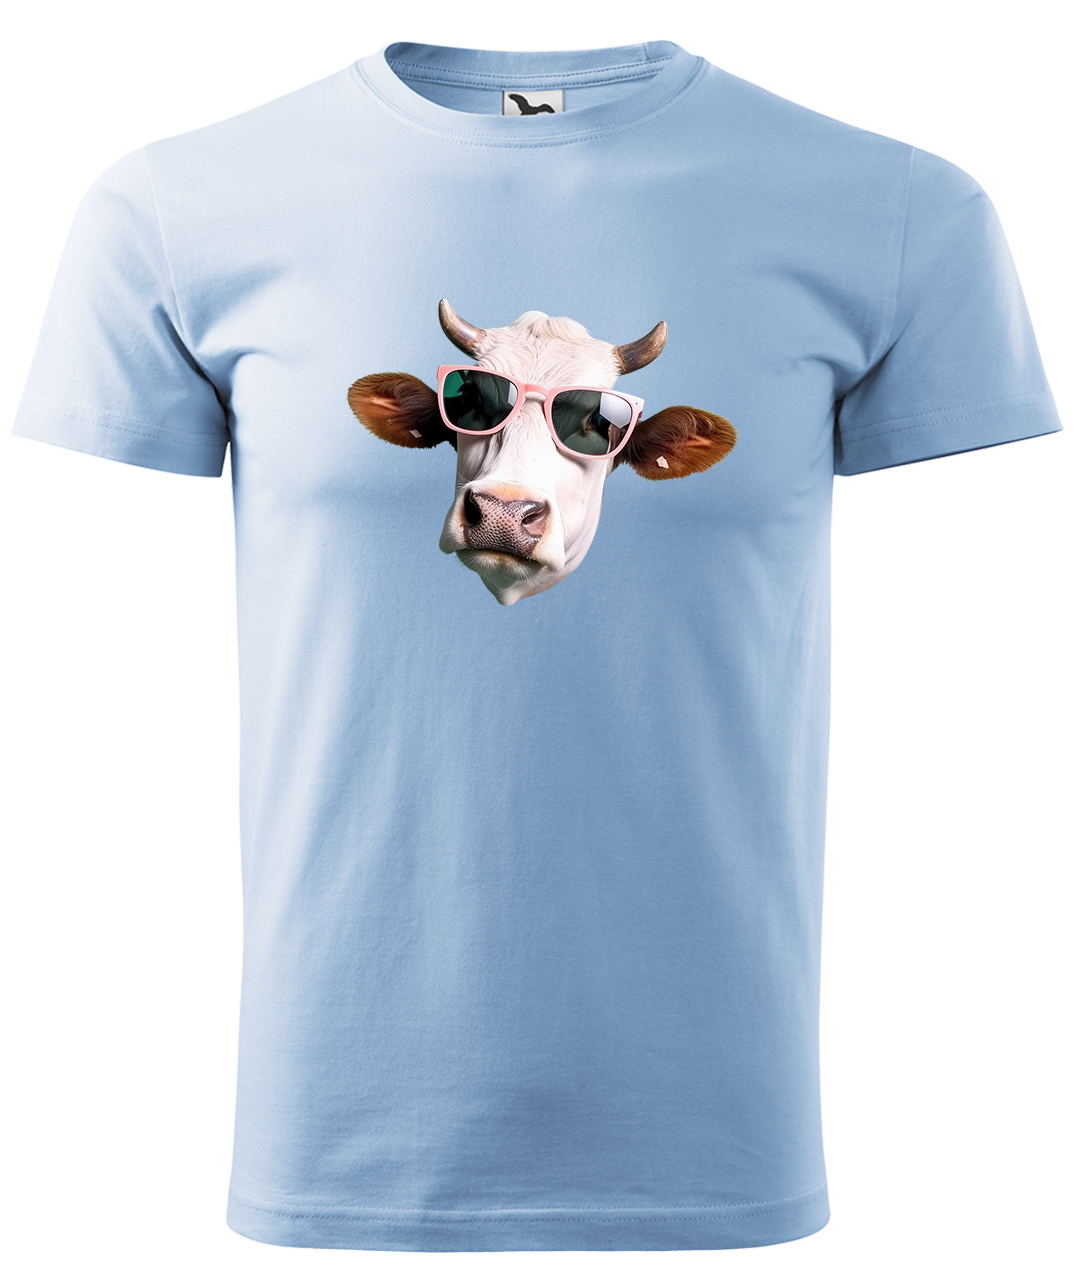 Dětské tričko s krávou - Kráva v brýlích Velikost: 10 let / 146 cm, Barva: Nebesky modrá (15), Délka rukávu: Krátký rukáv